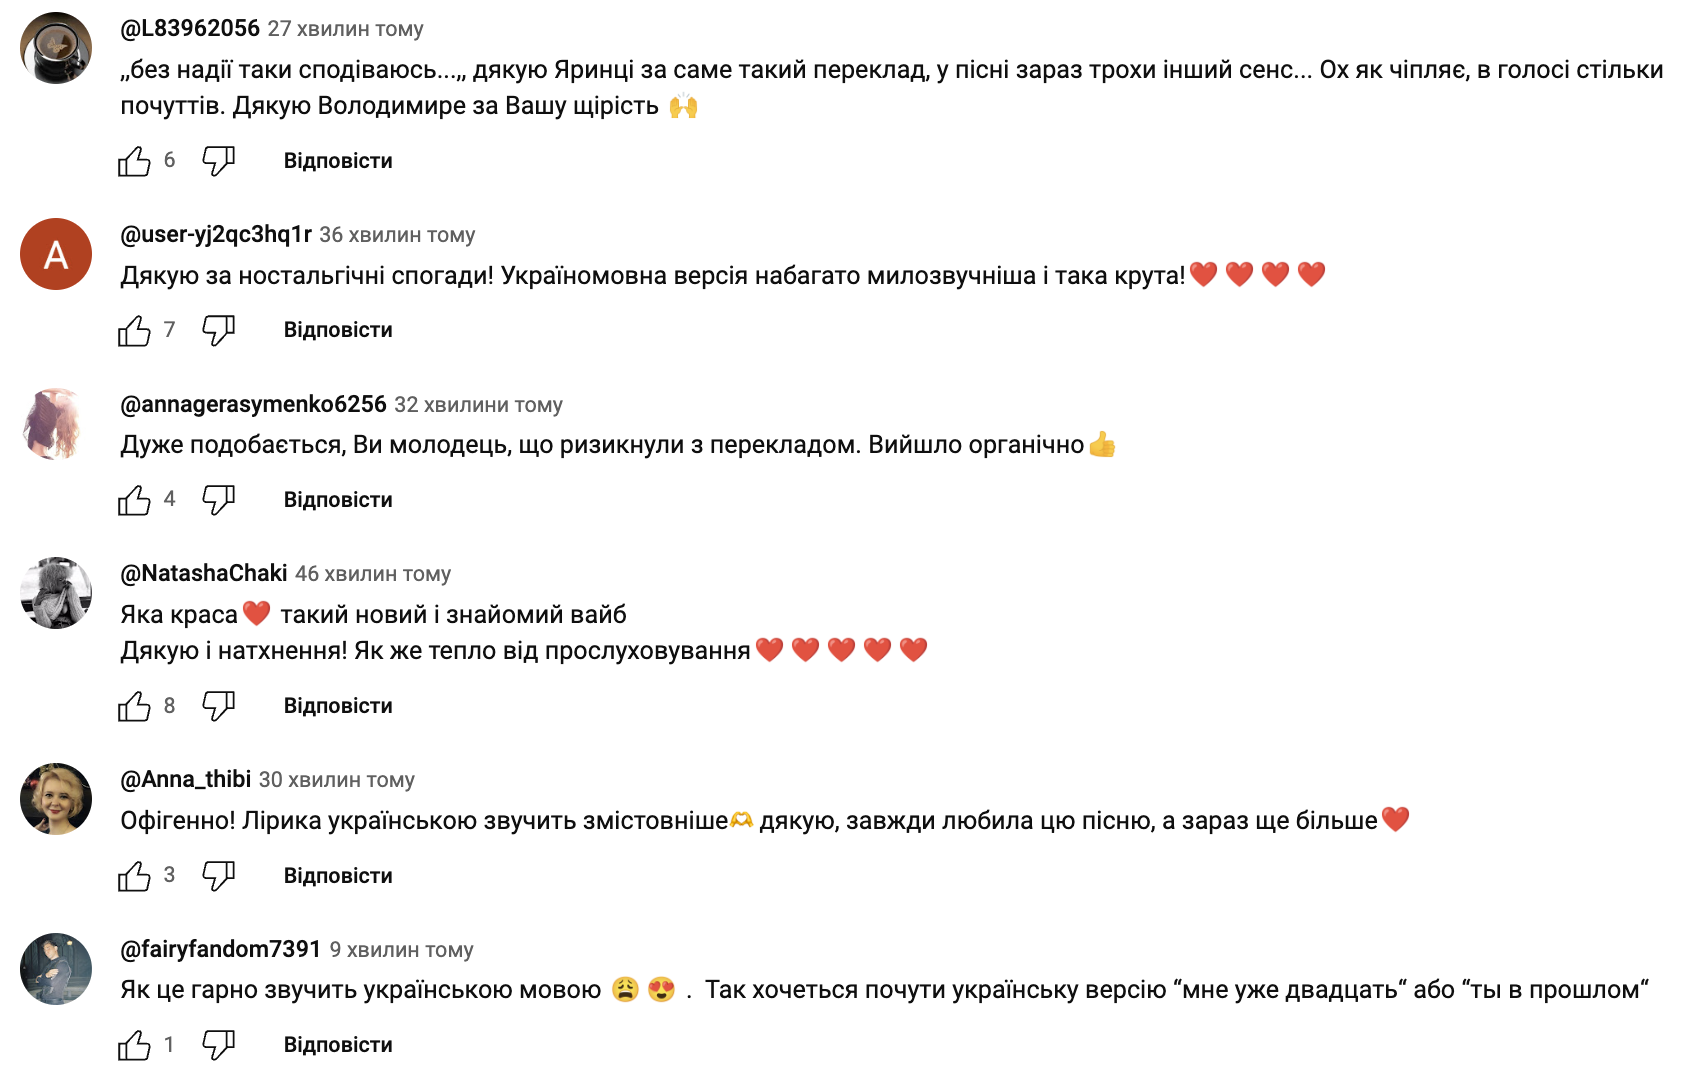 Дантес перевел свою культовую "Девочку Олю" на украинский: слушателям понравилось больше, чем оригинал